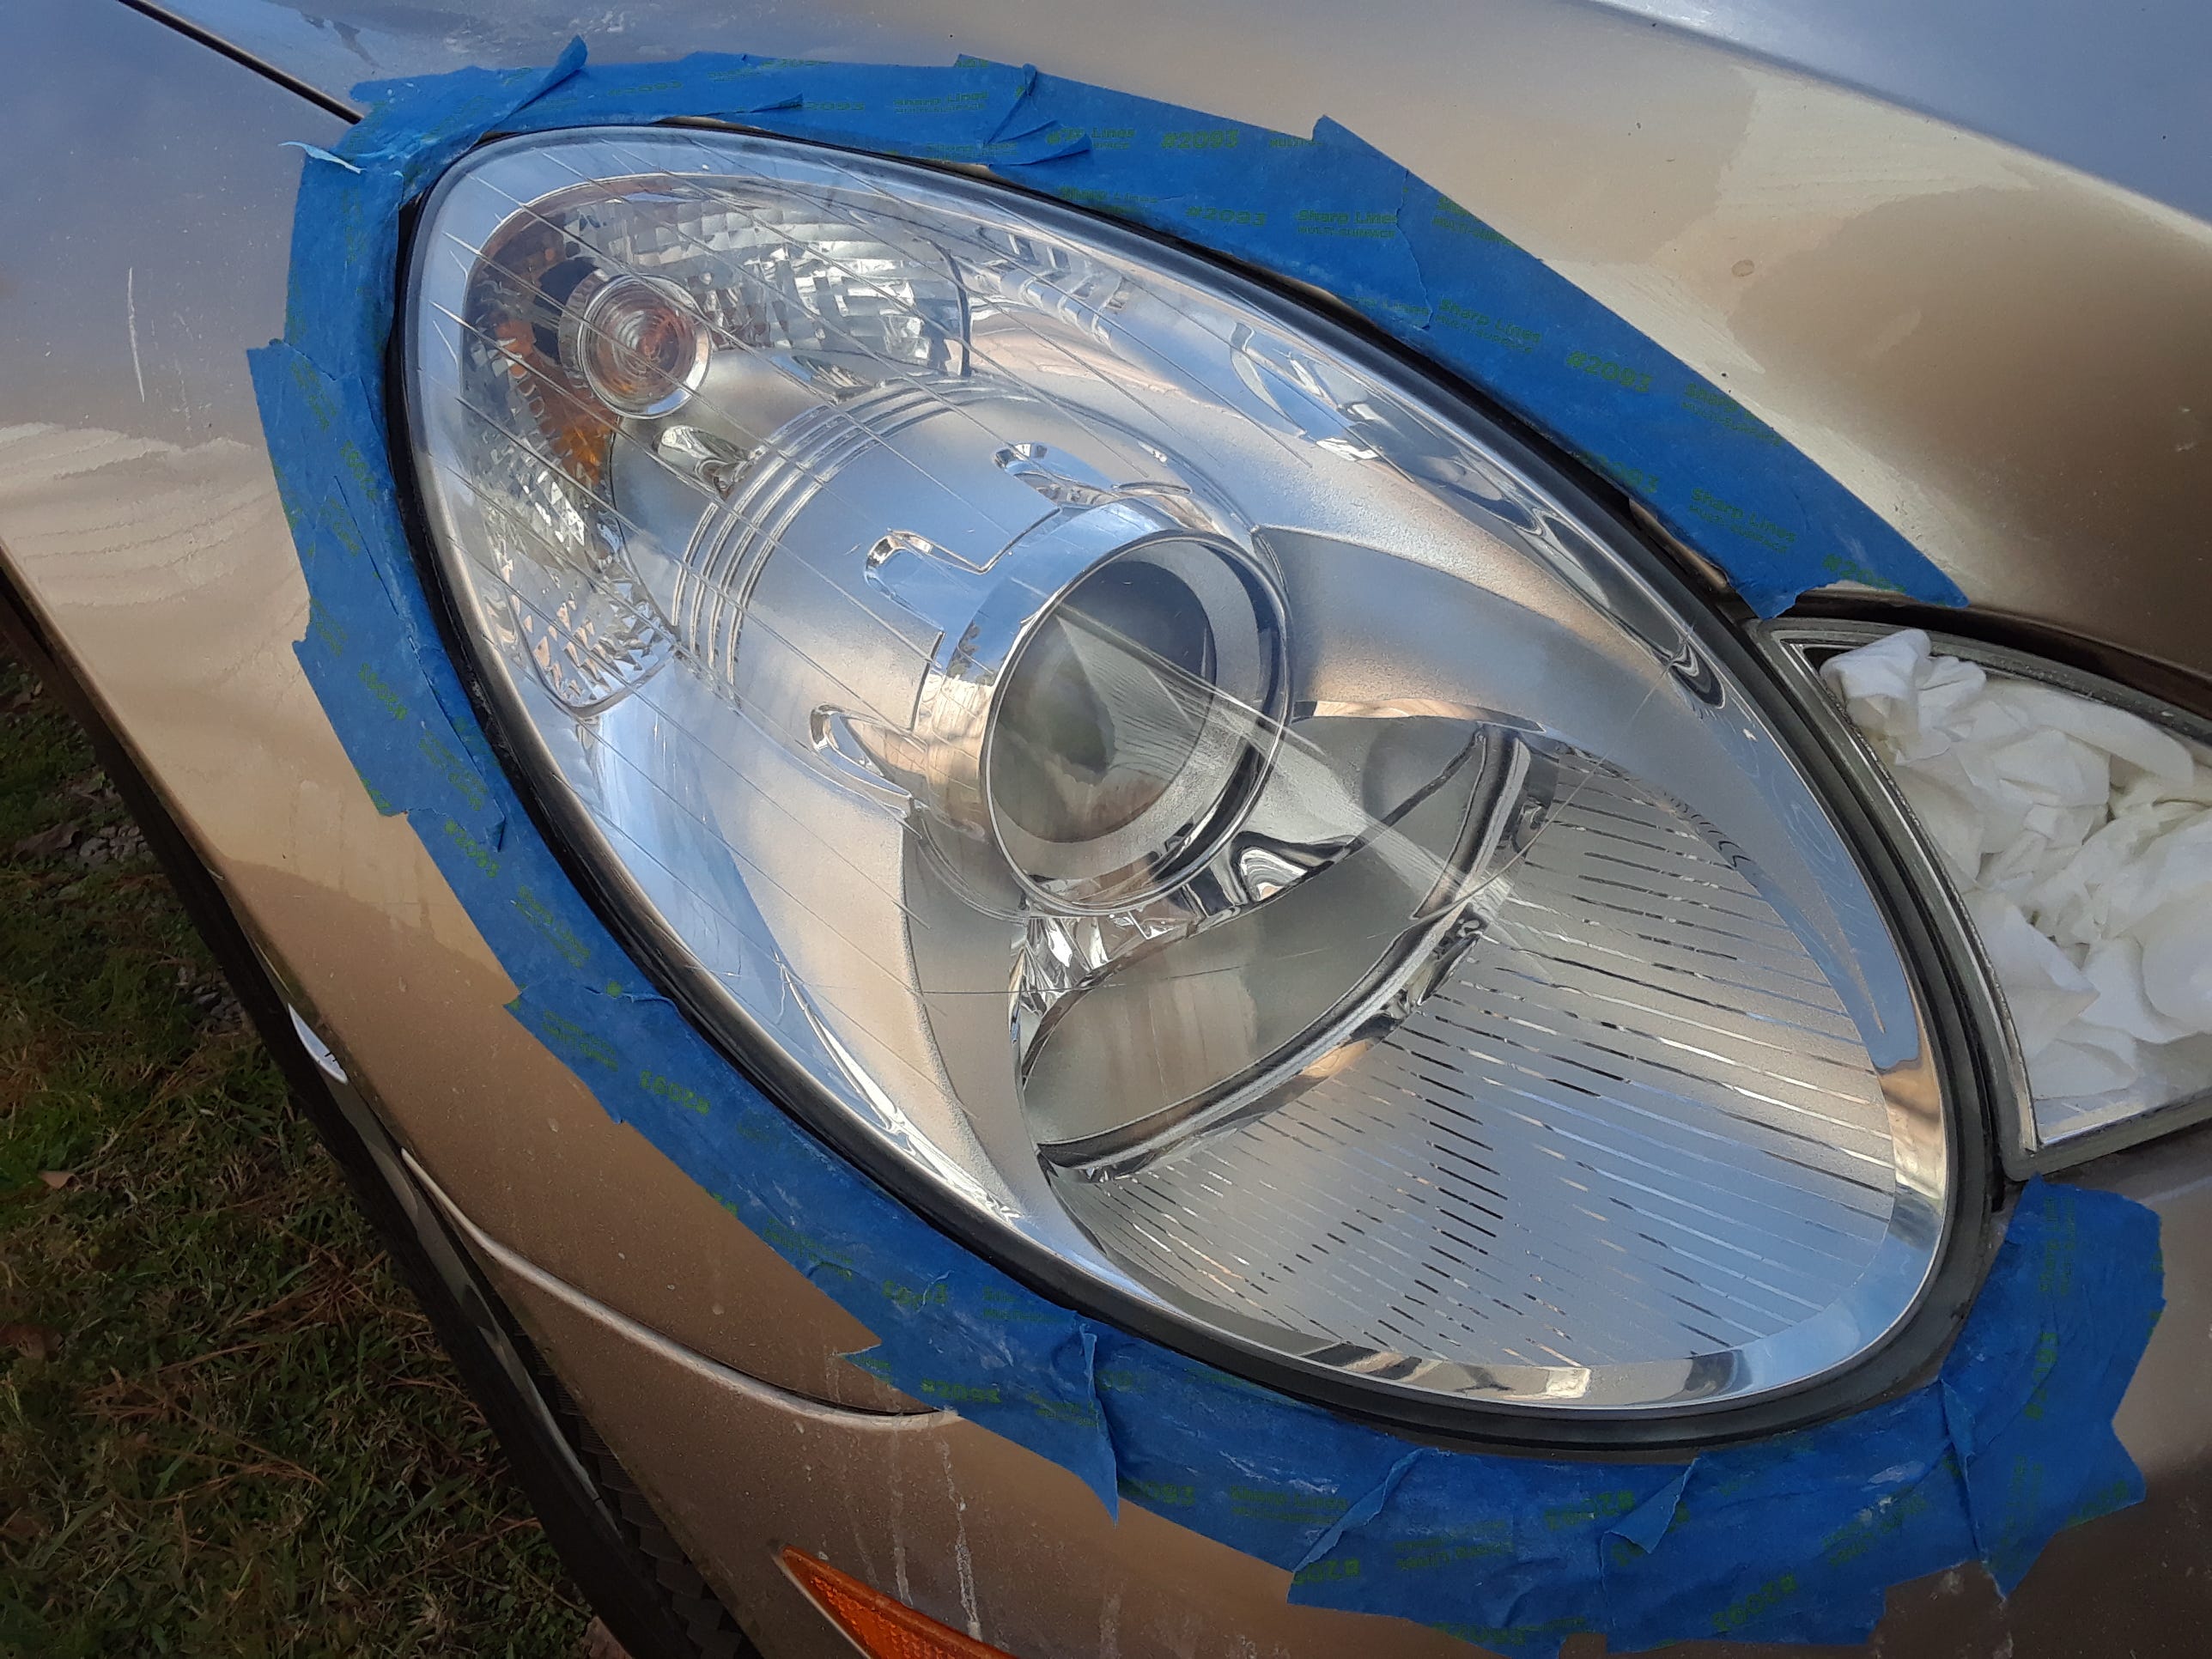 Headlight Restoration Bundle* - Skys The Limit Car Care